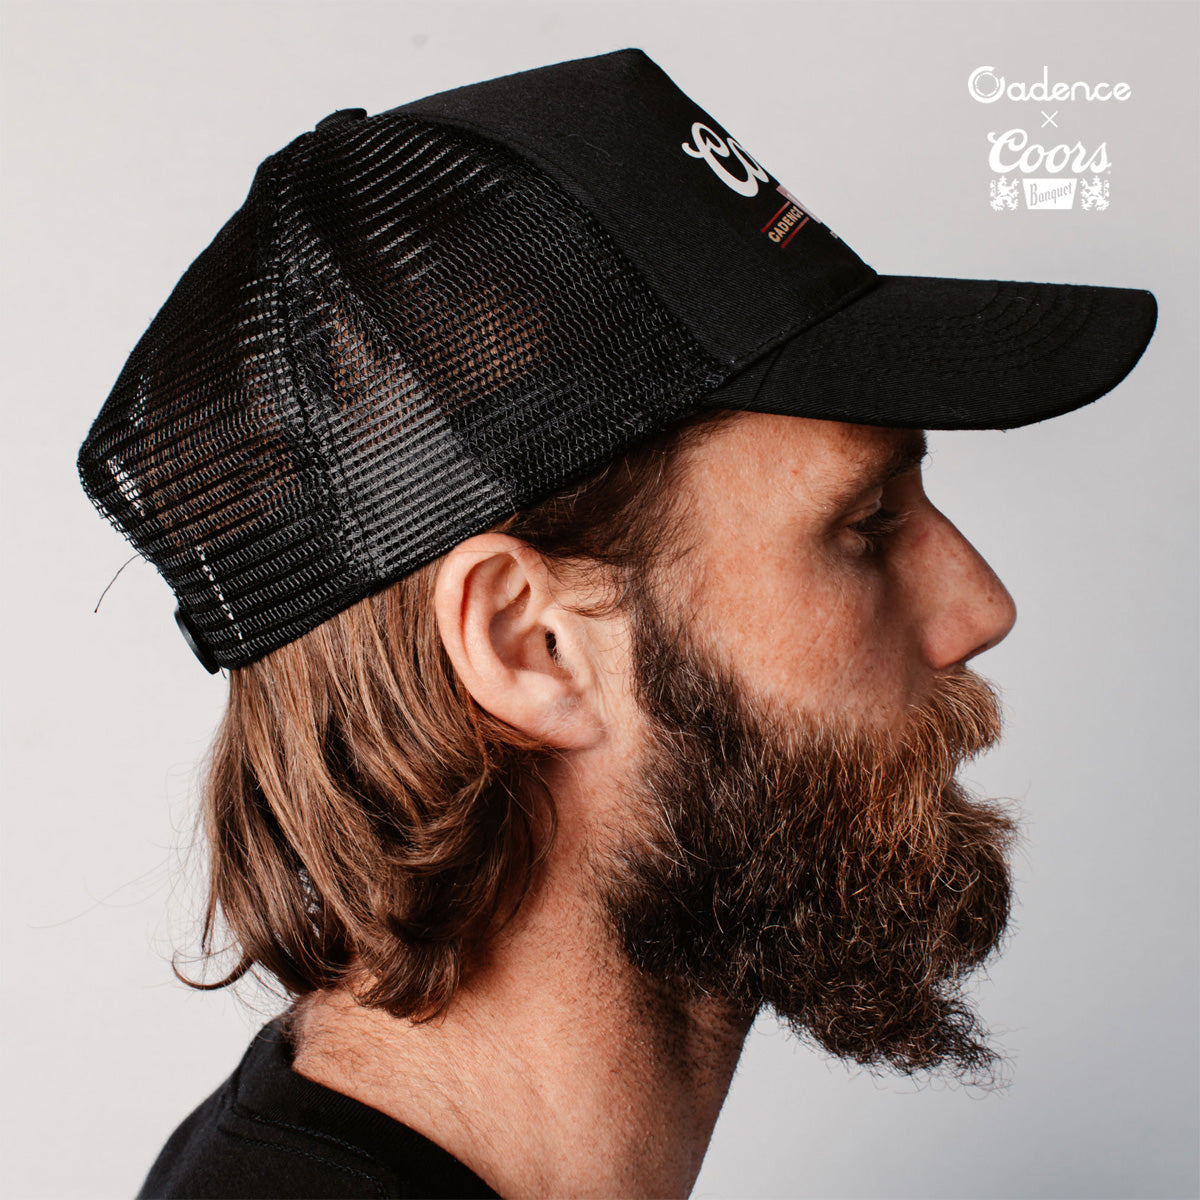 Coors OG Trucker Hat [Black]